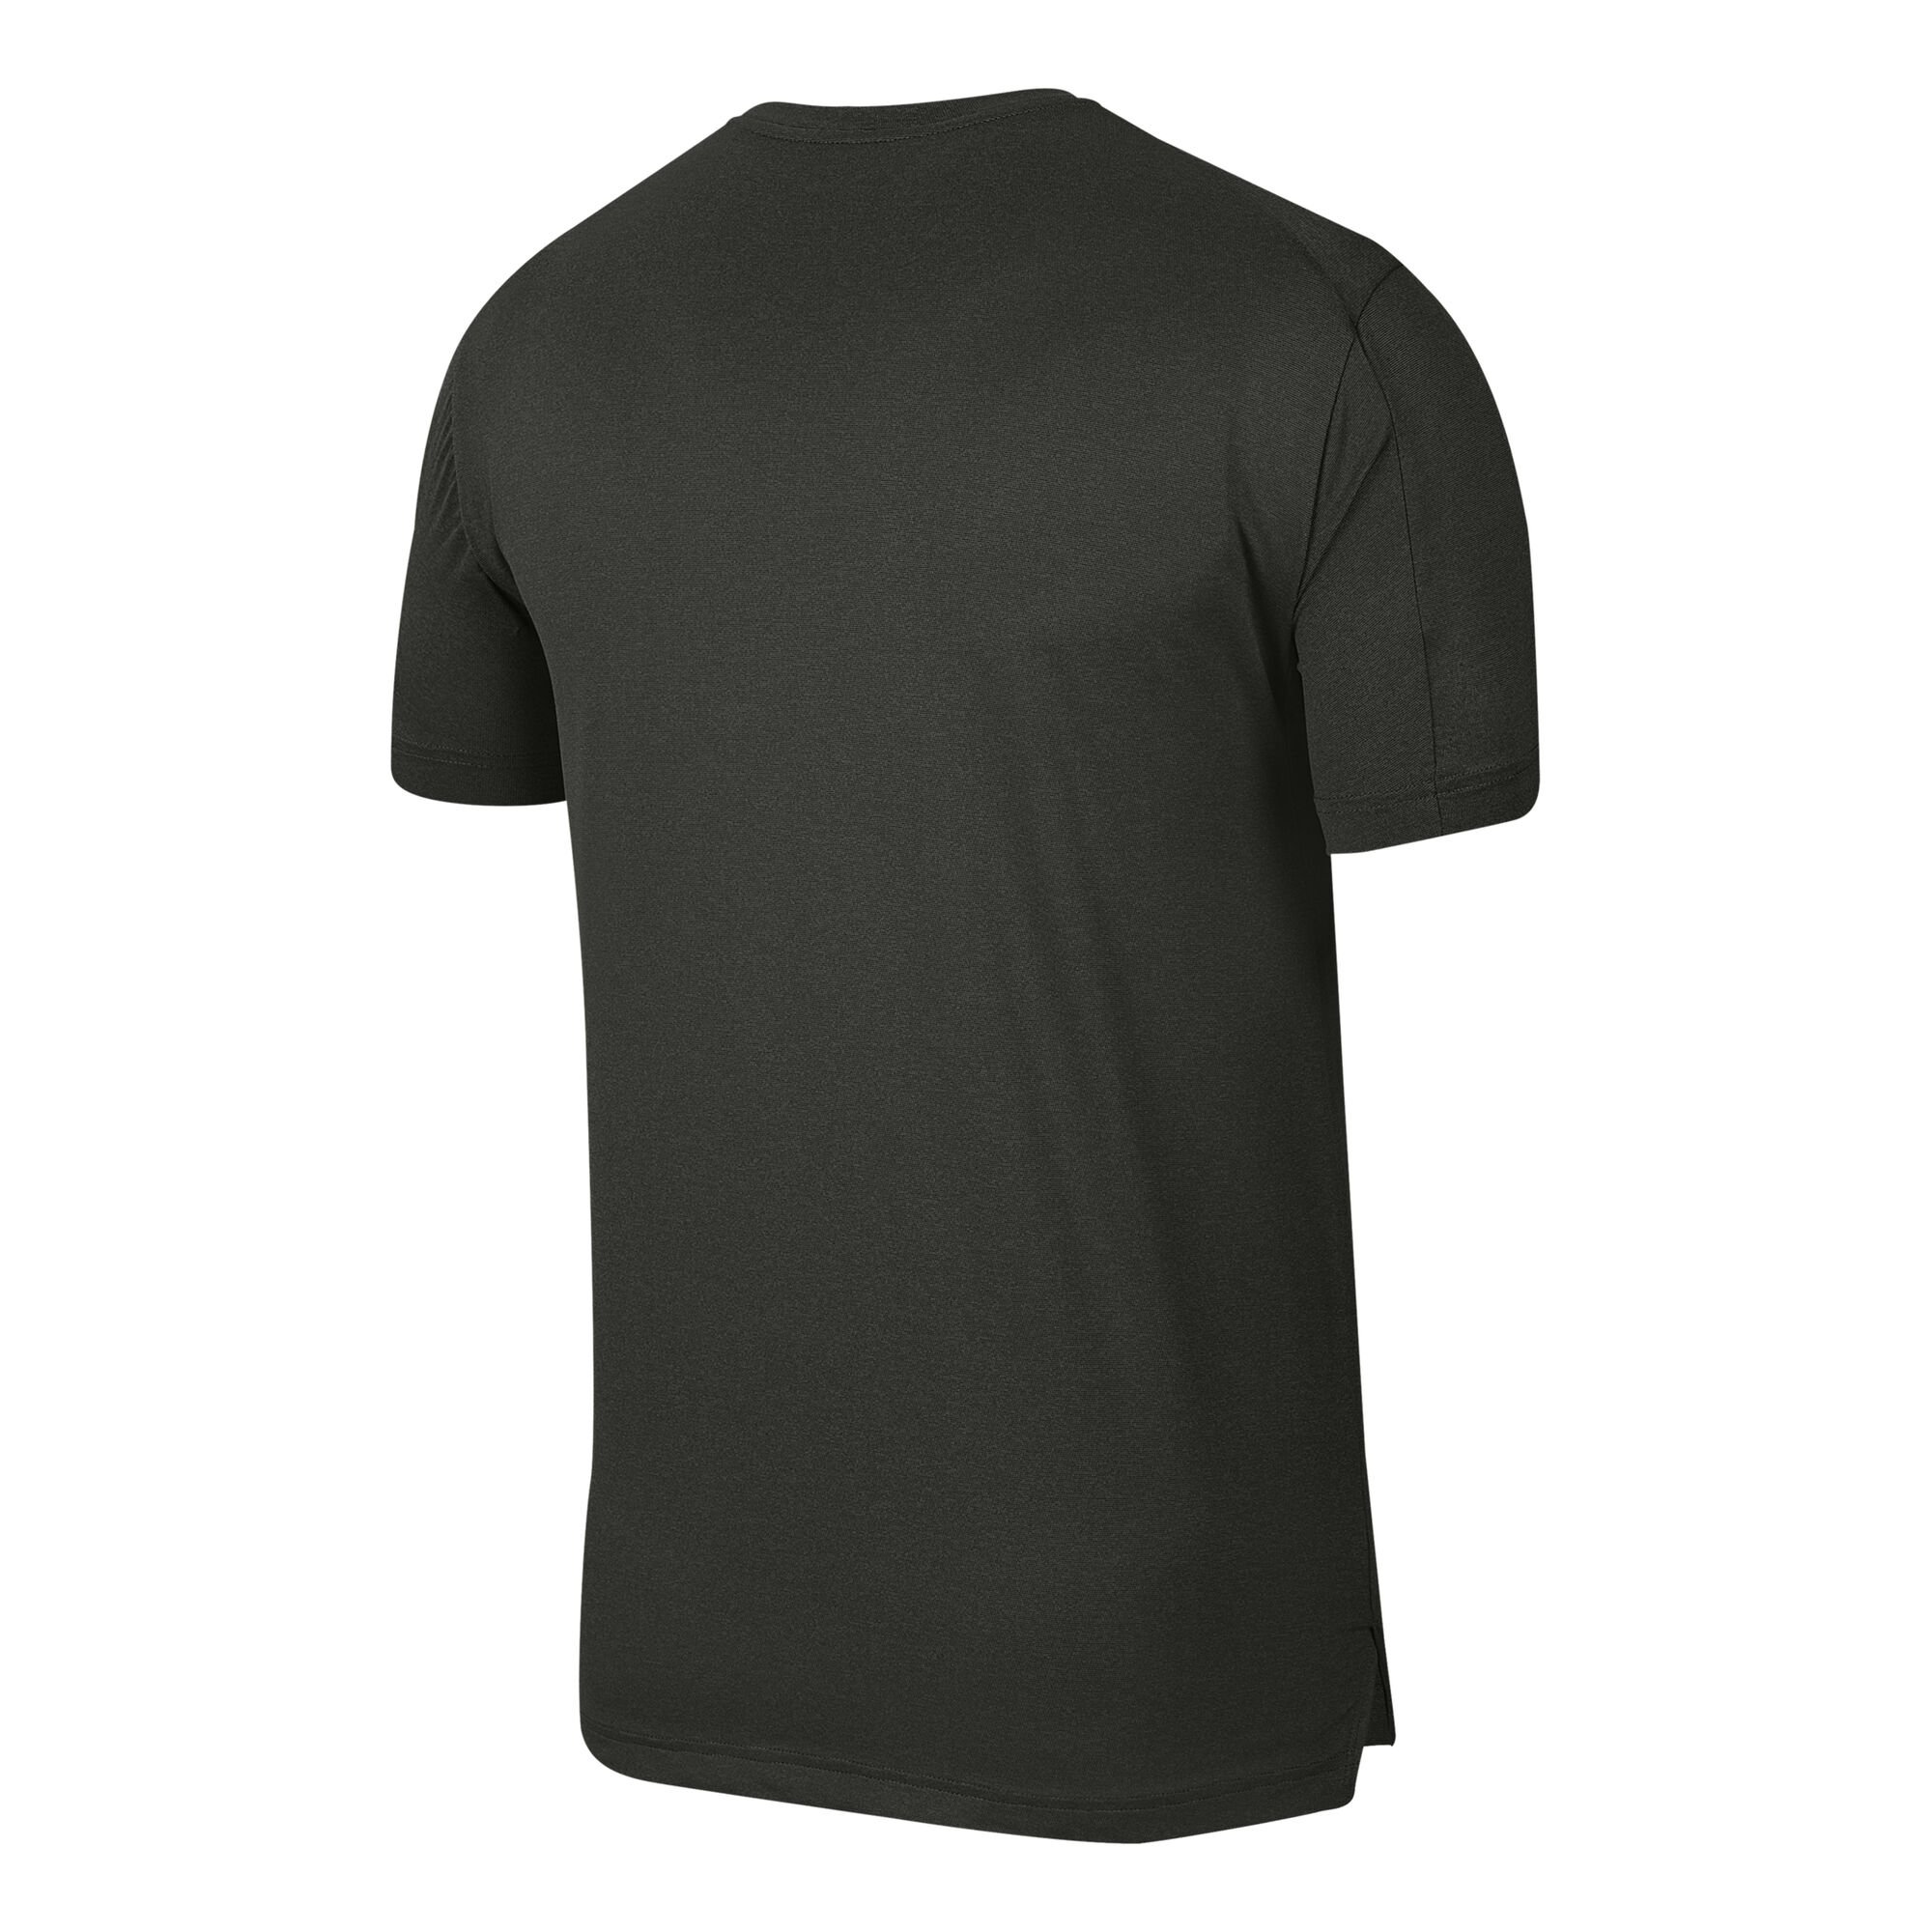 buy Nike Dry Hyper T-Shirt Men - Dark Green online | Tennis-Point